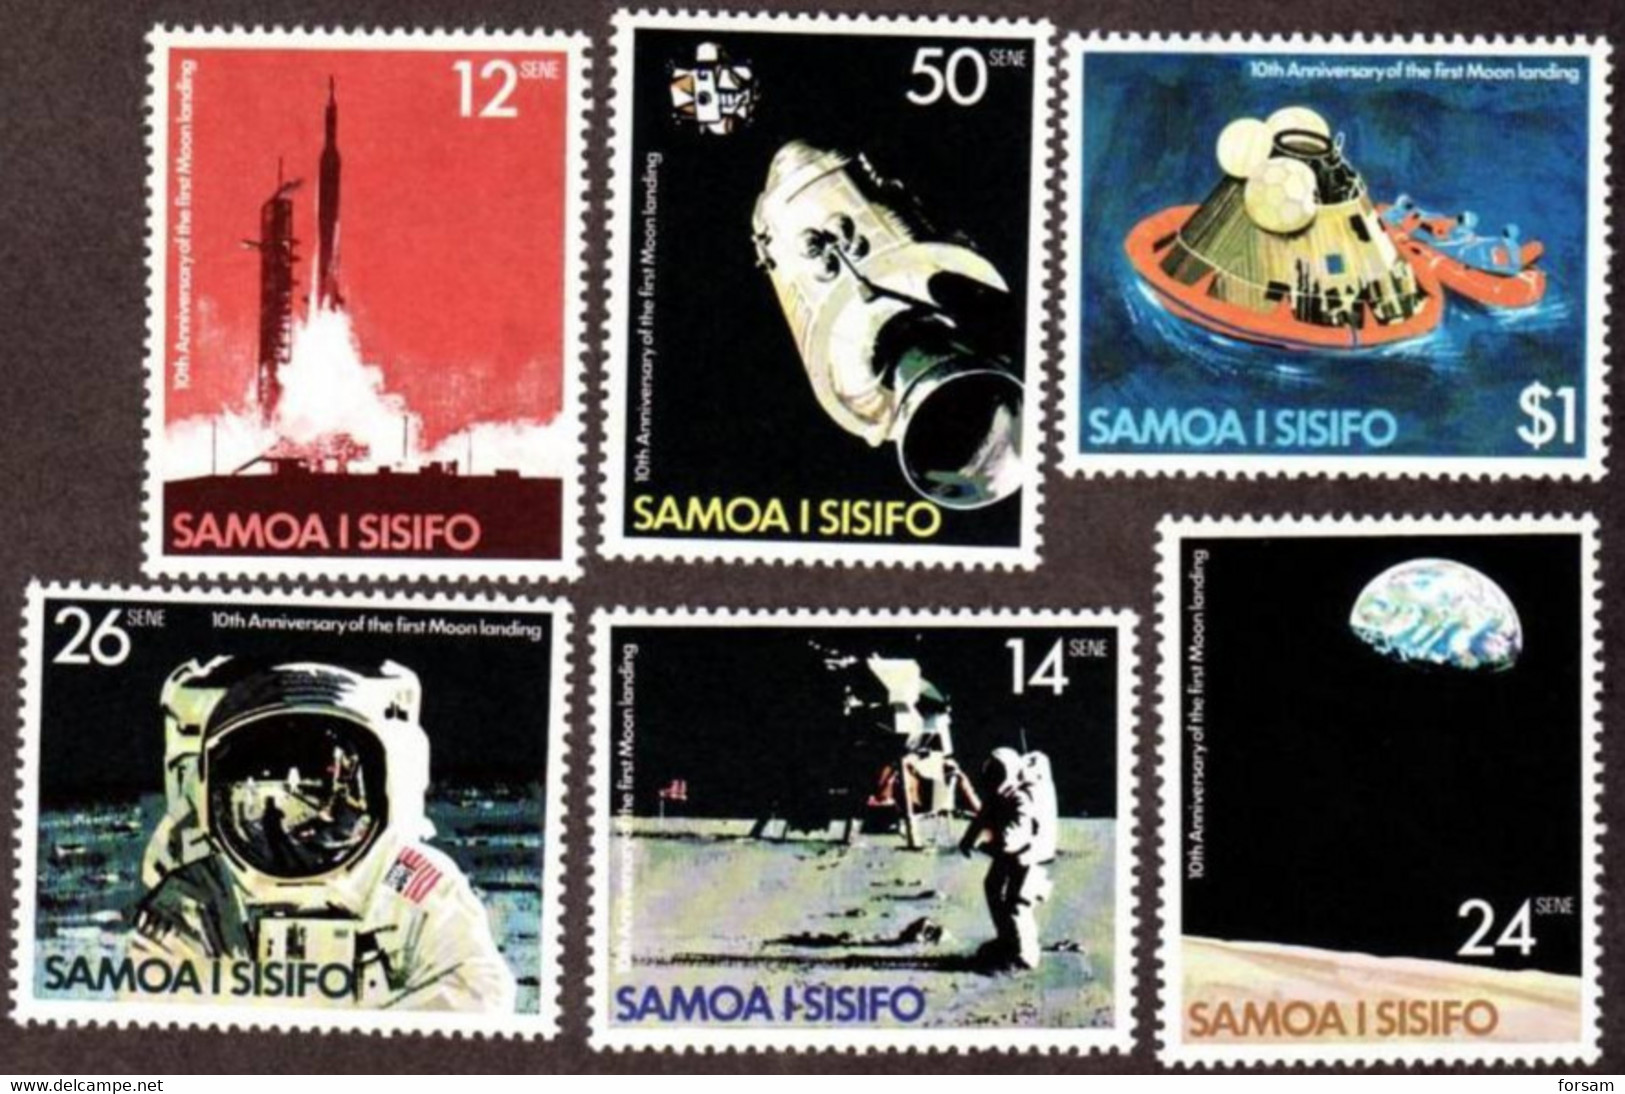 SAMOA..1979..Michel # 407-412...MNH...MiCV - 4 Euro. - Samoa (Staat)